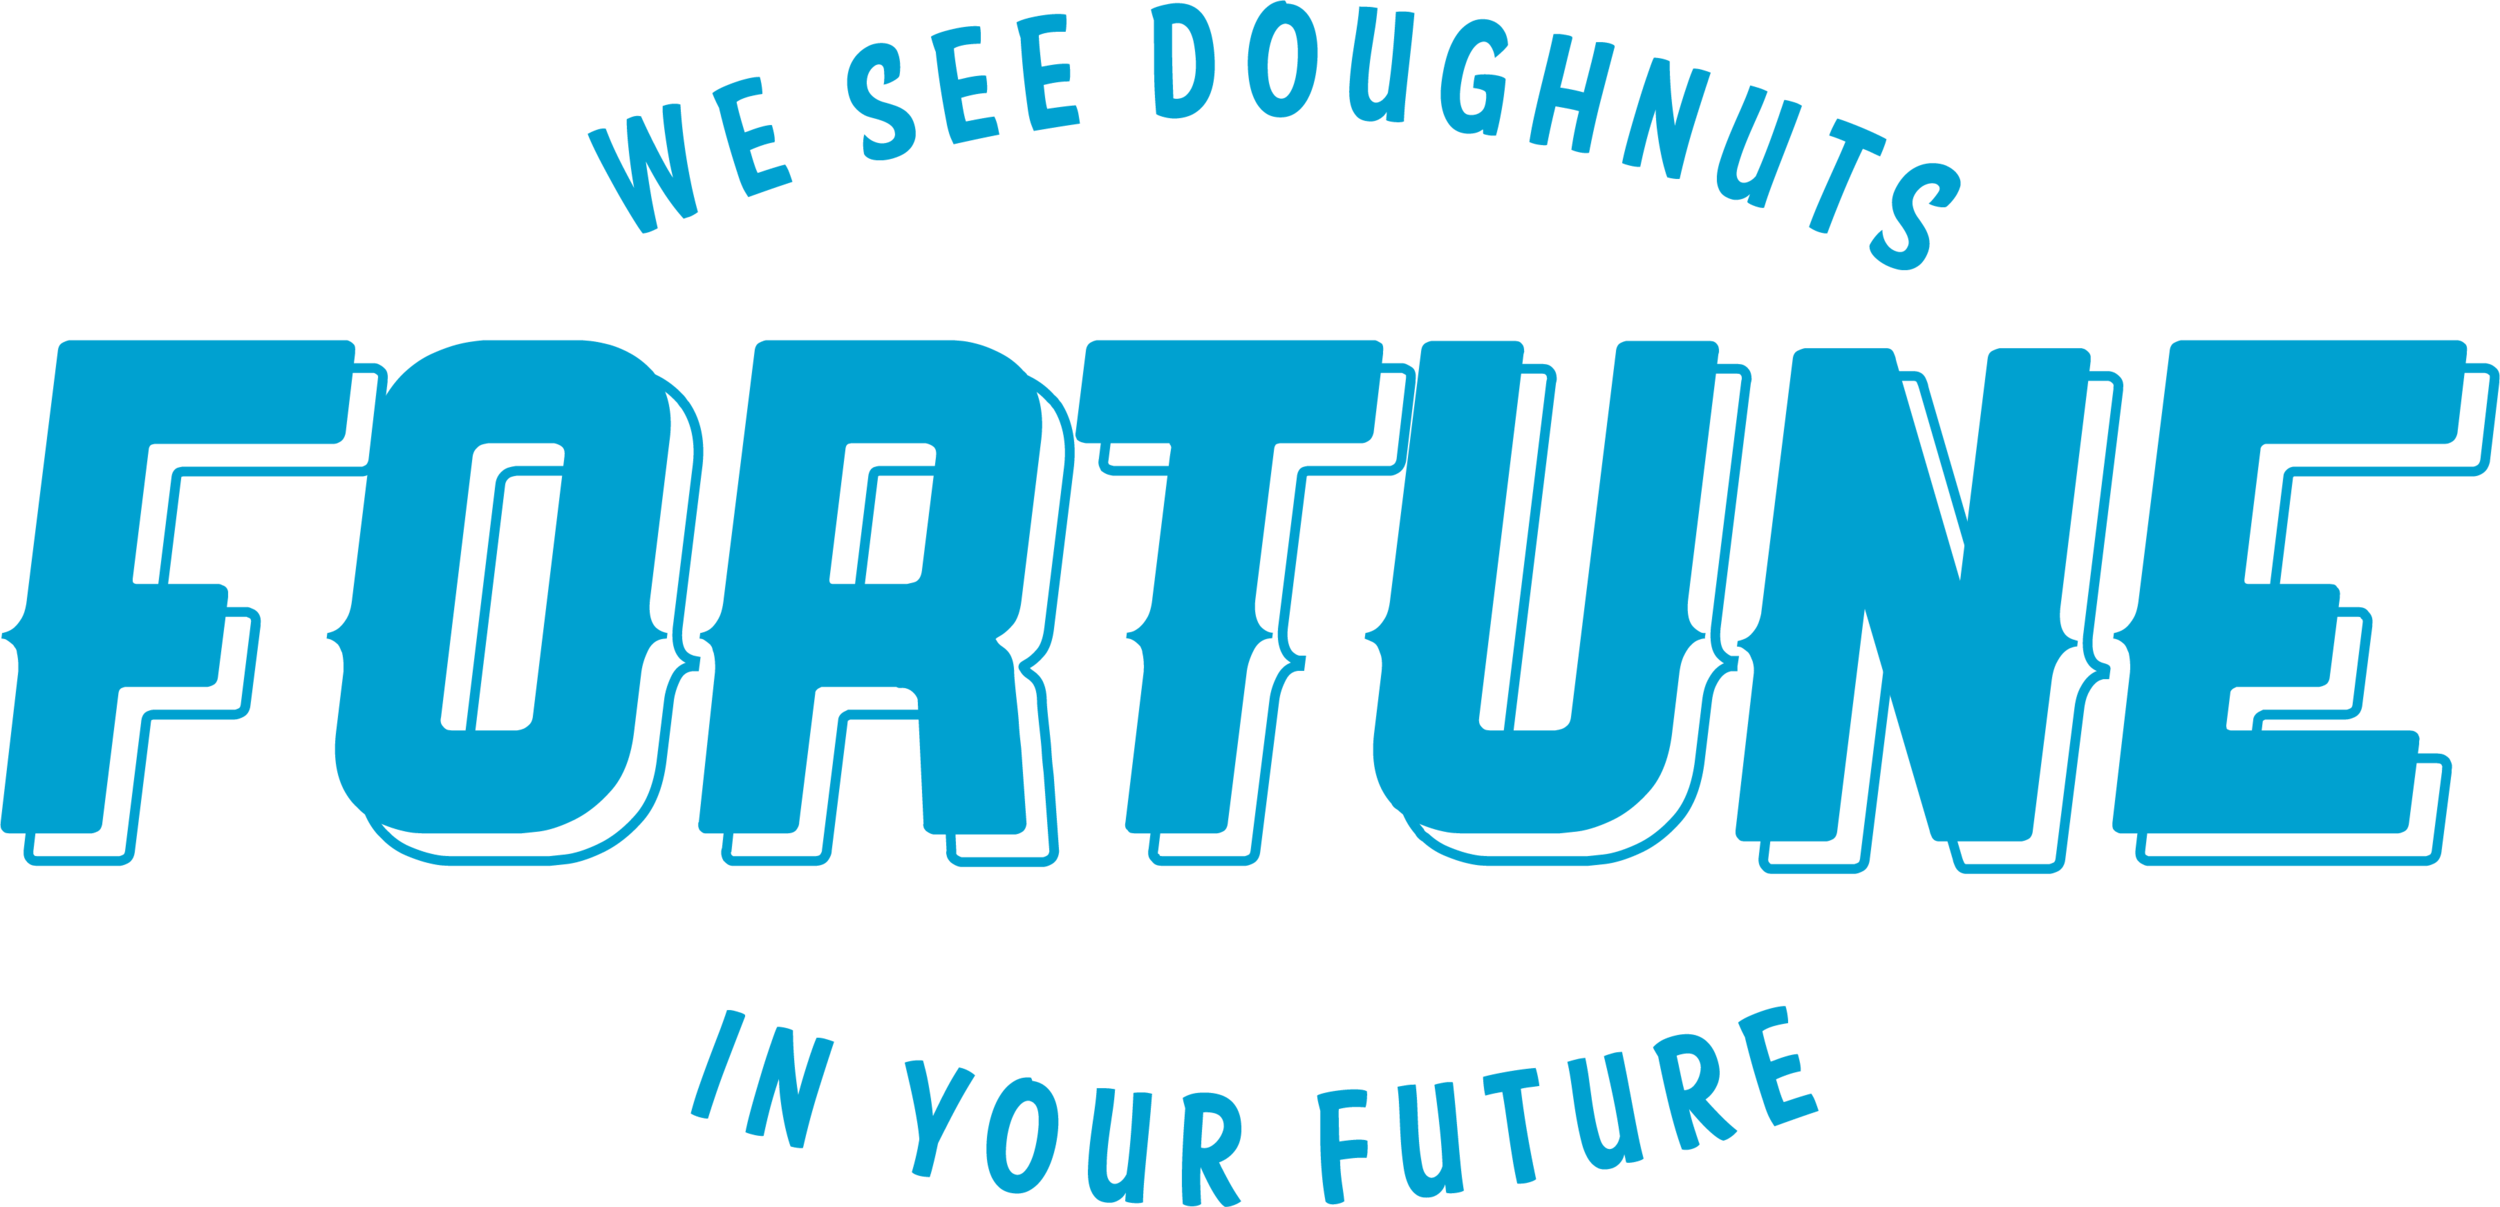 we-see-doughnuts-logo.png